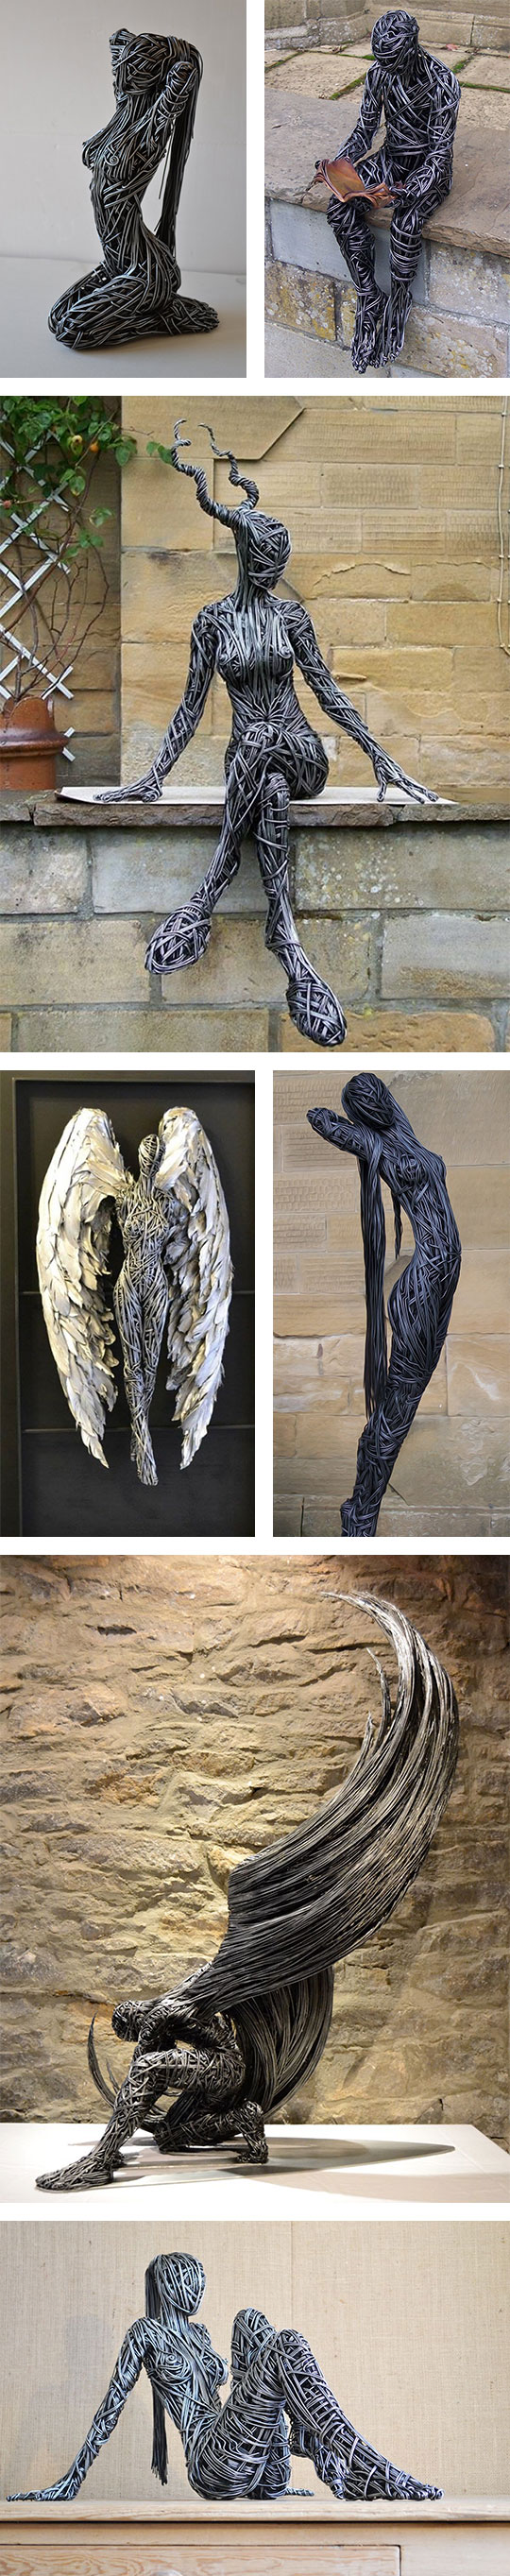 metallic-beings-sculptures